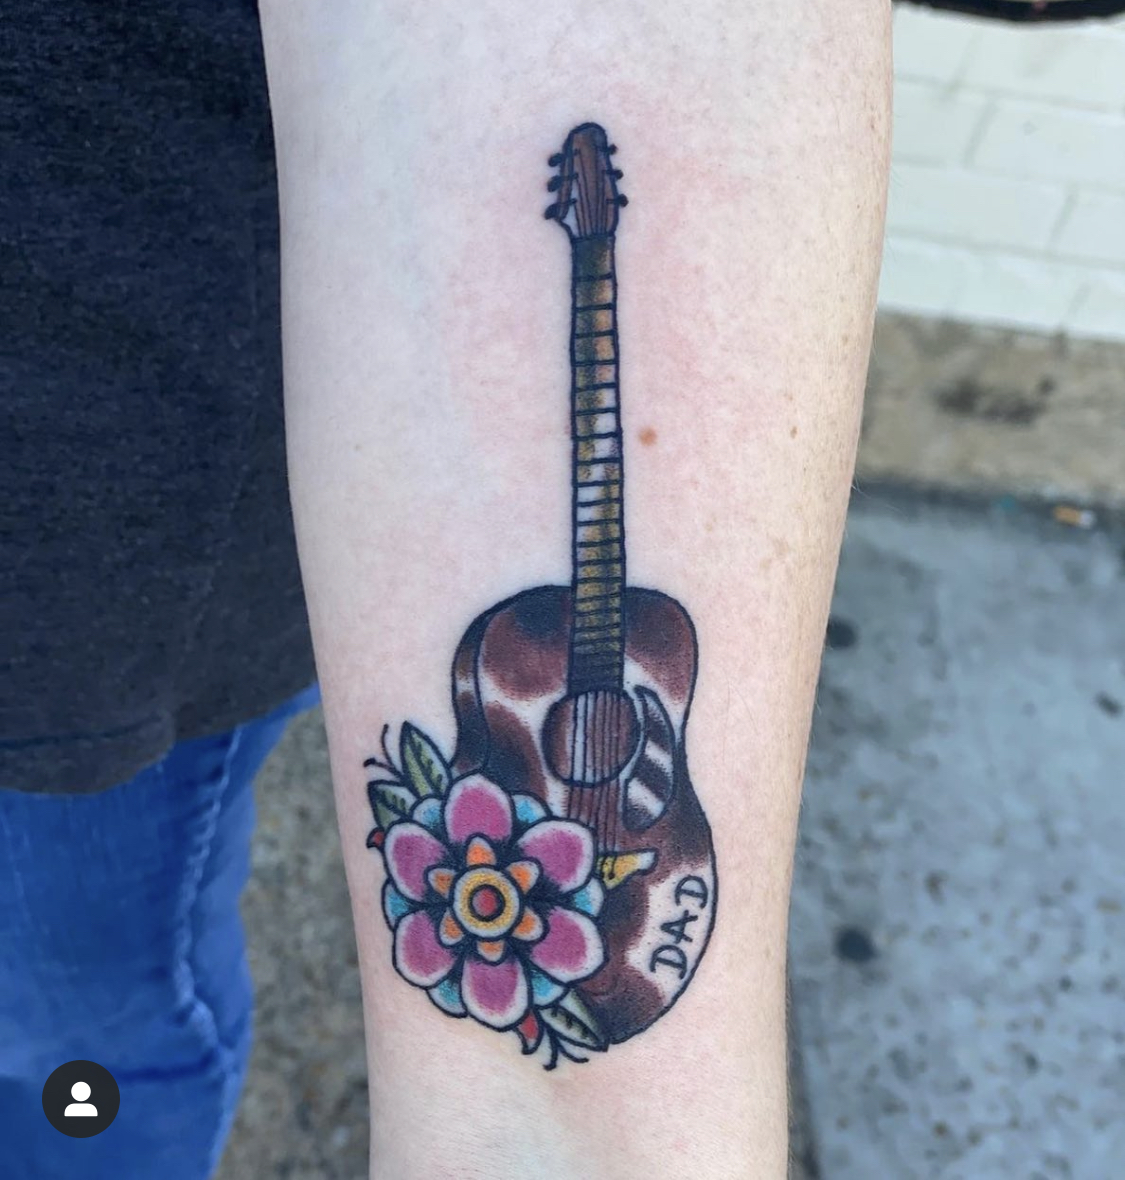 Tattoo of a guitar from top Dallas tattoo artist